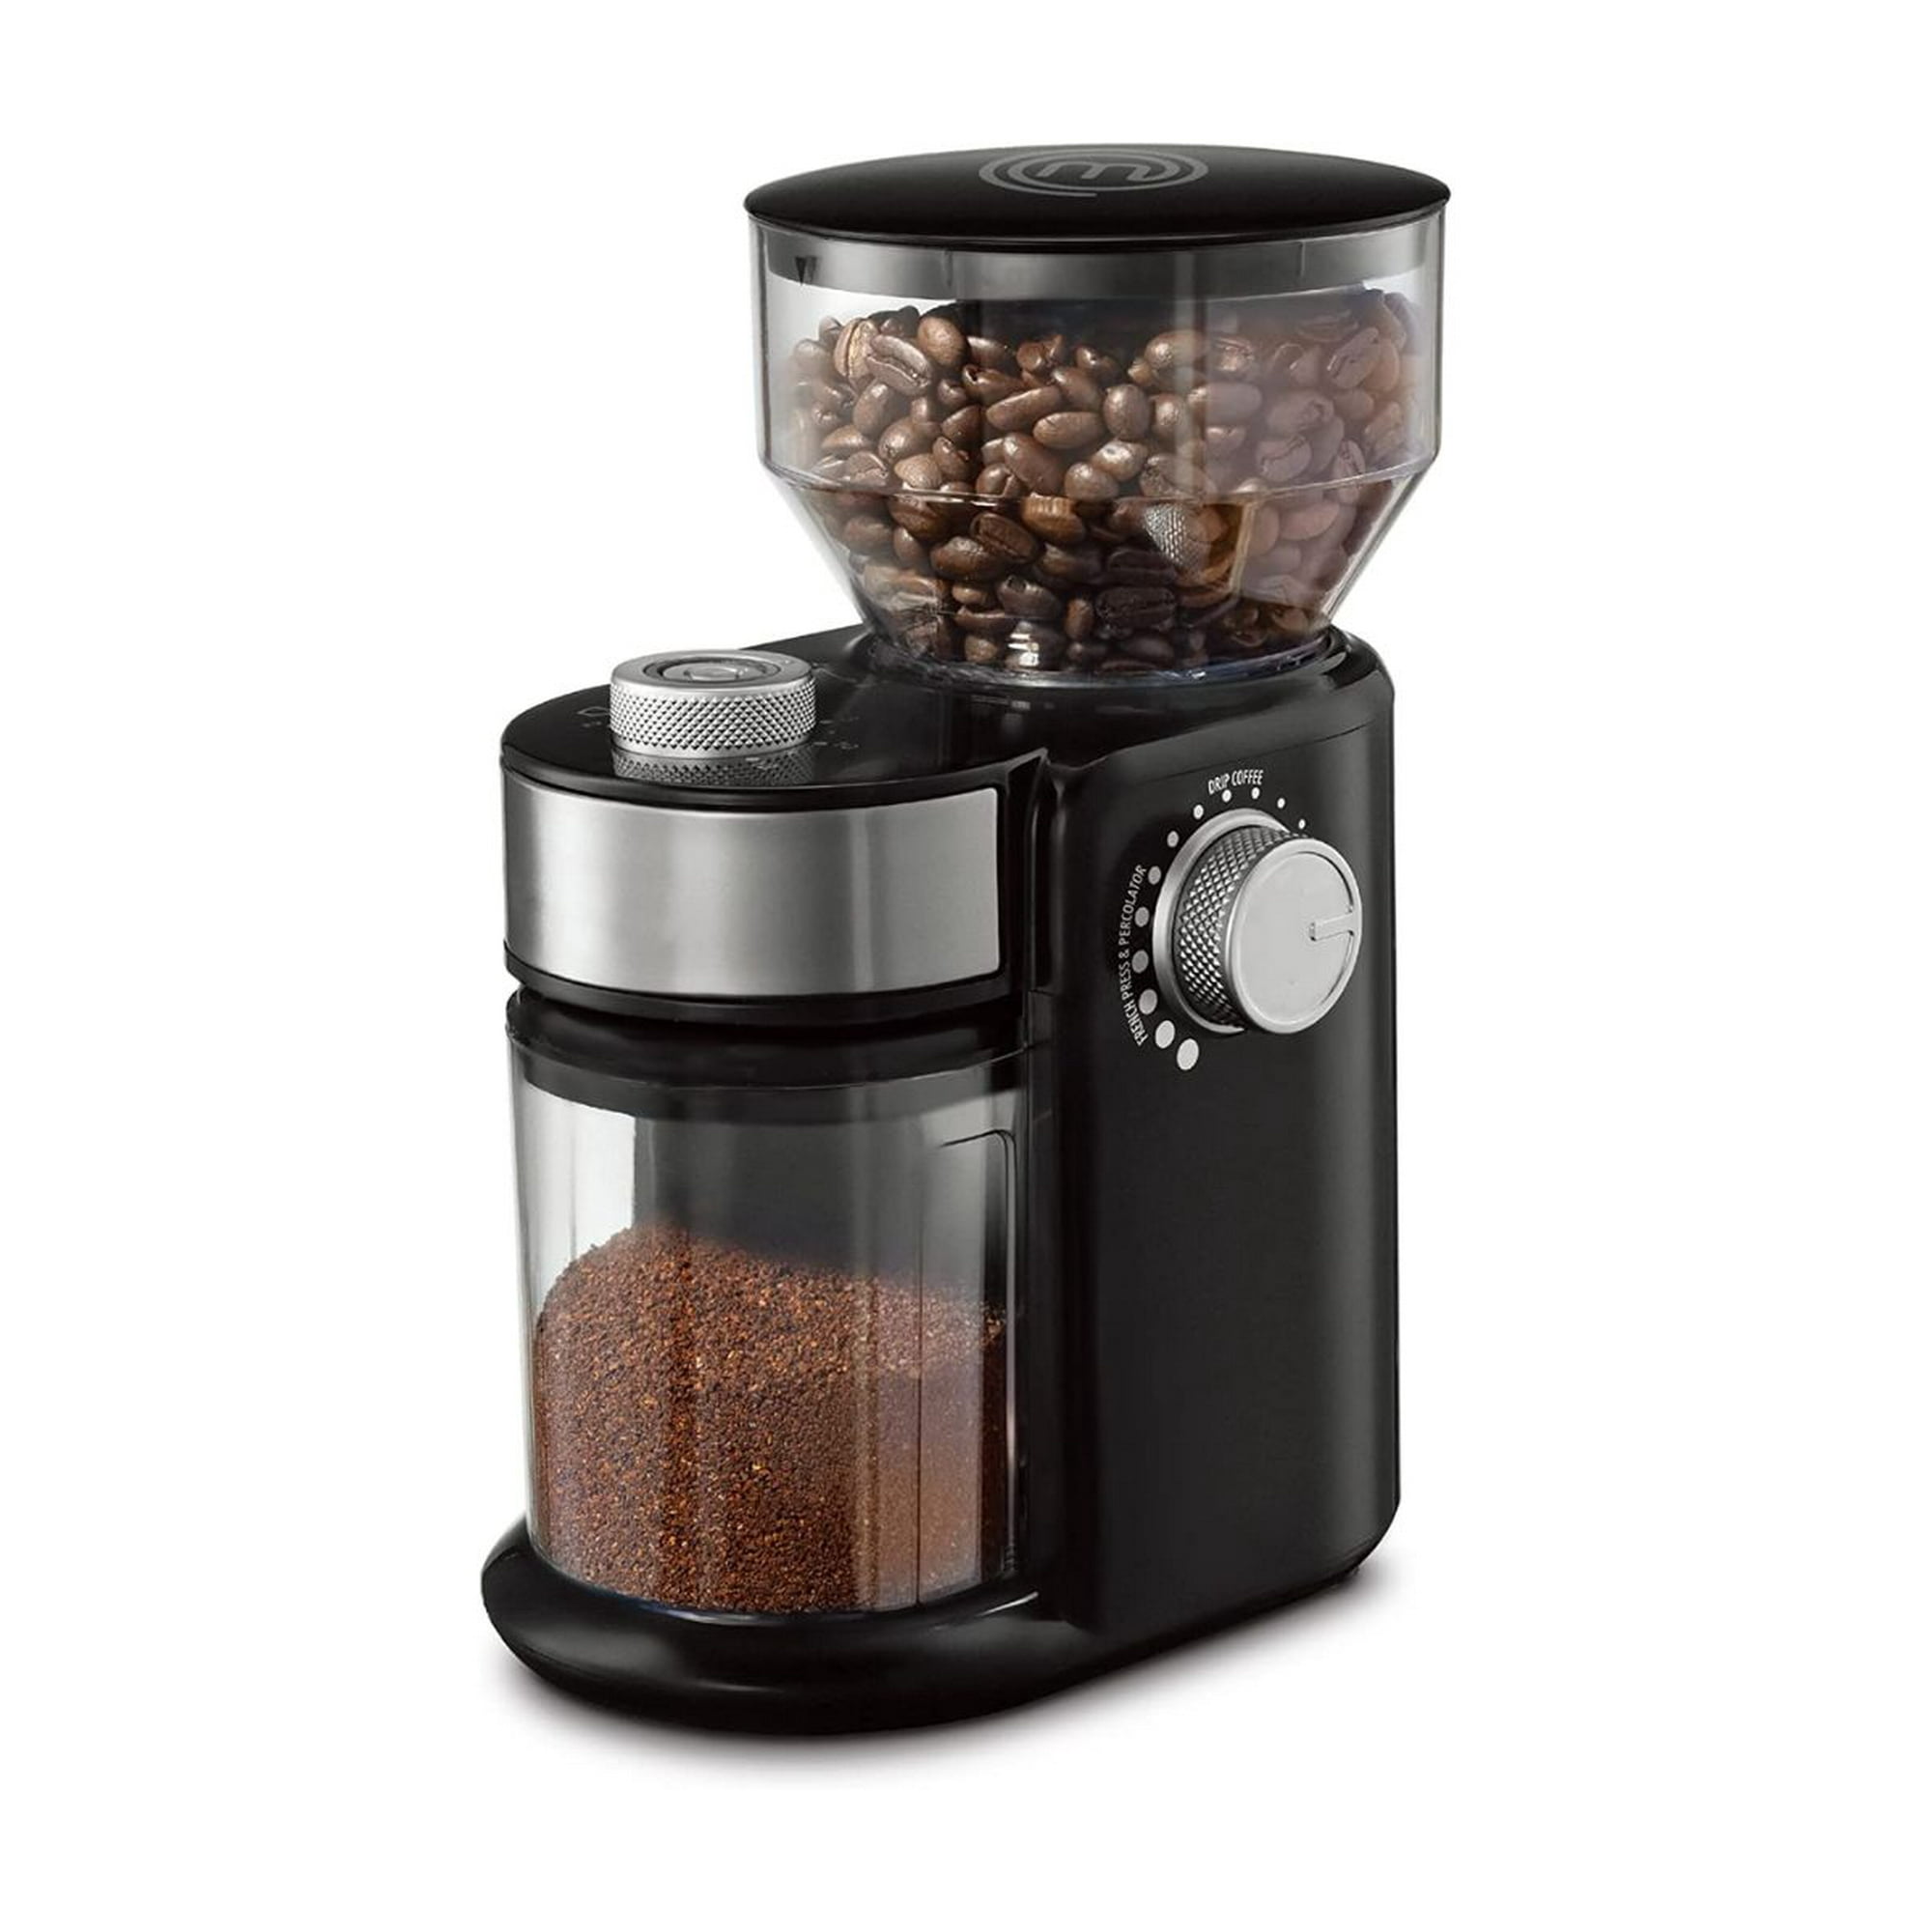 Molino de café grande (60 kg/hr) Ideal para expendio de café – Café la Meca